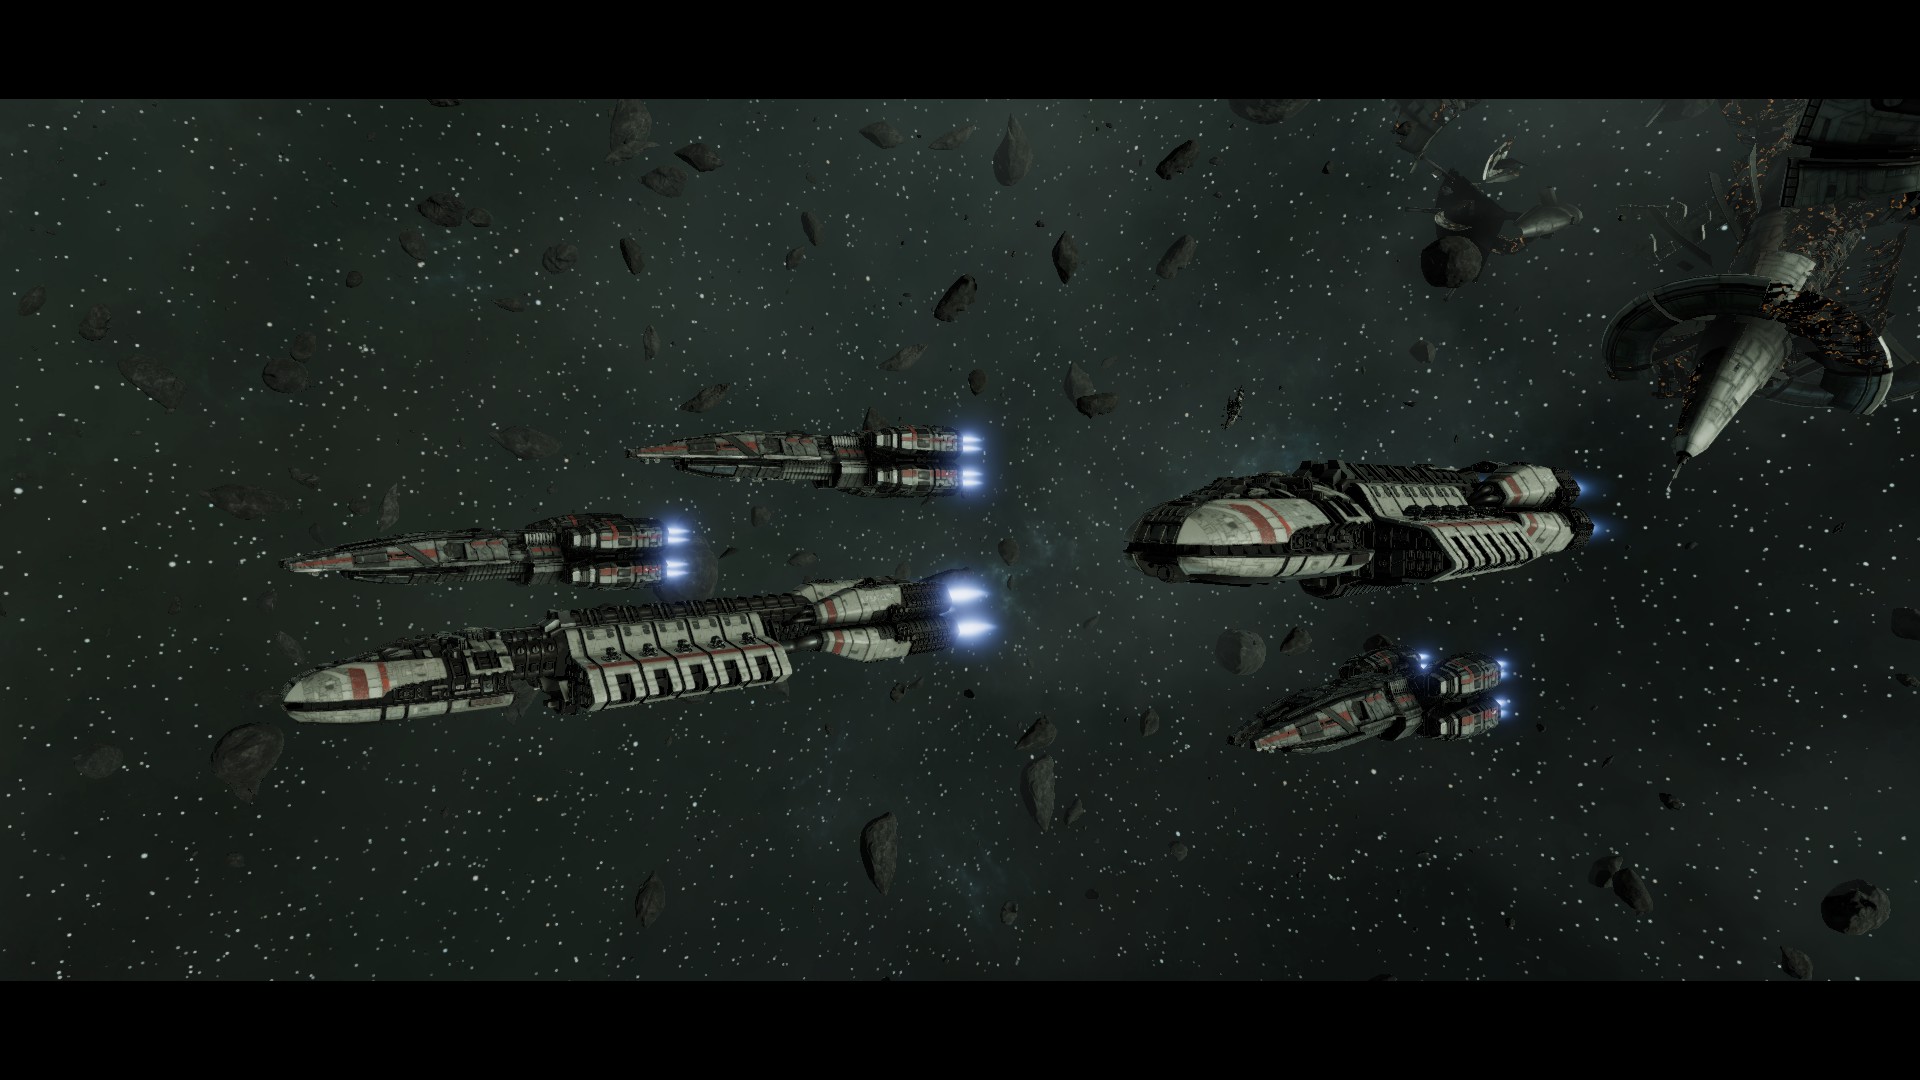 Battlestar Galactica Deadlock - Reinforcement Pack DLC Steam CD Key, 3.93 usd